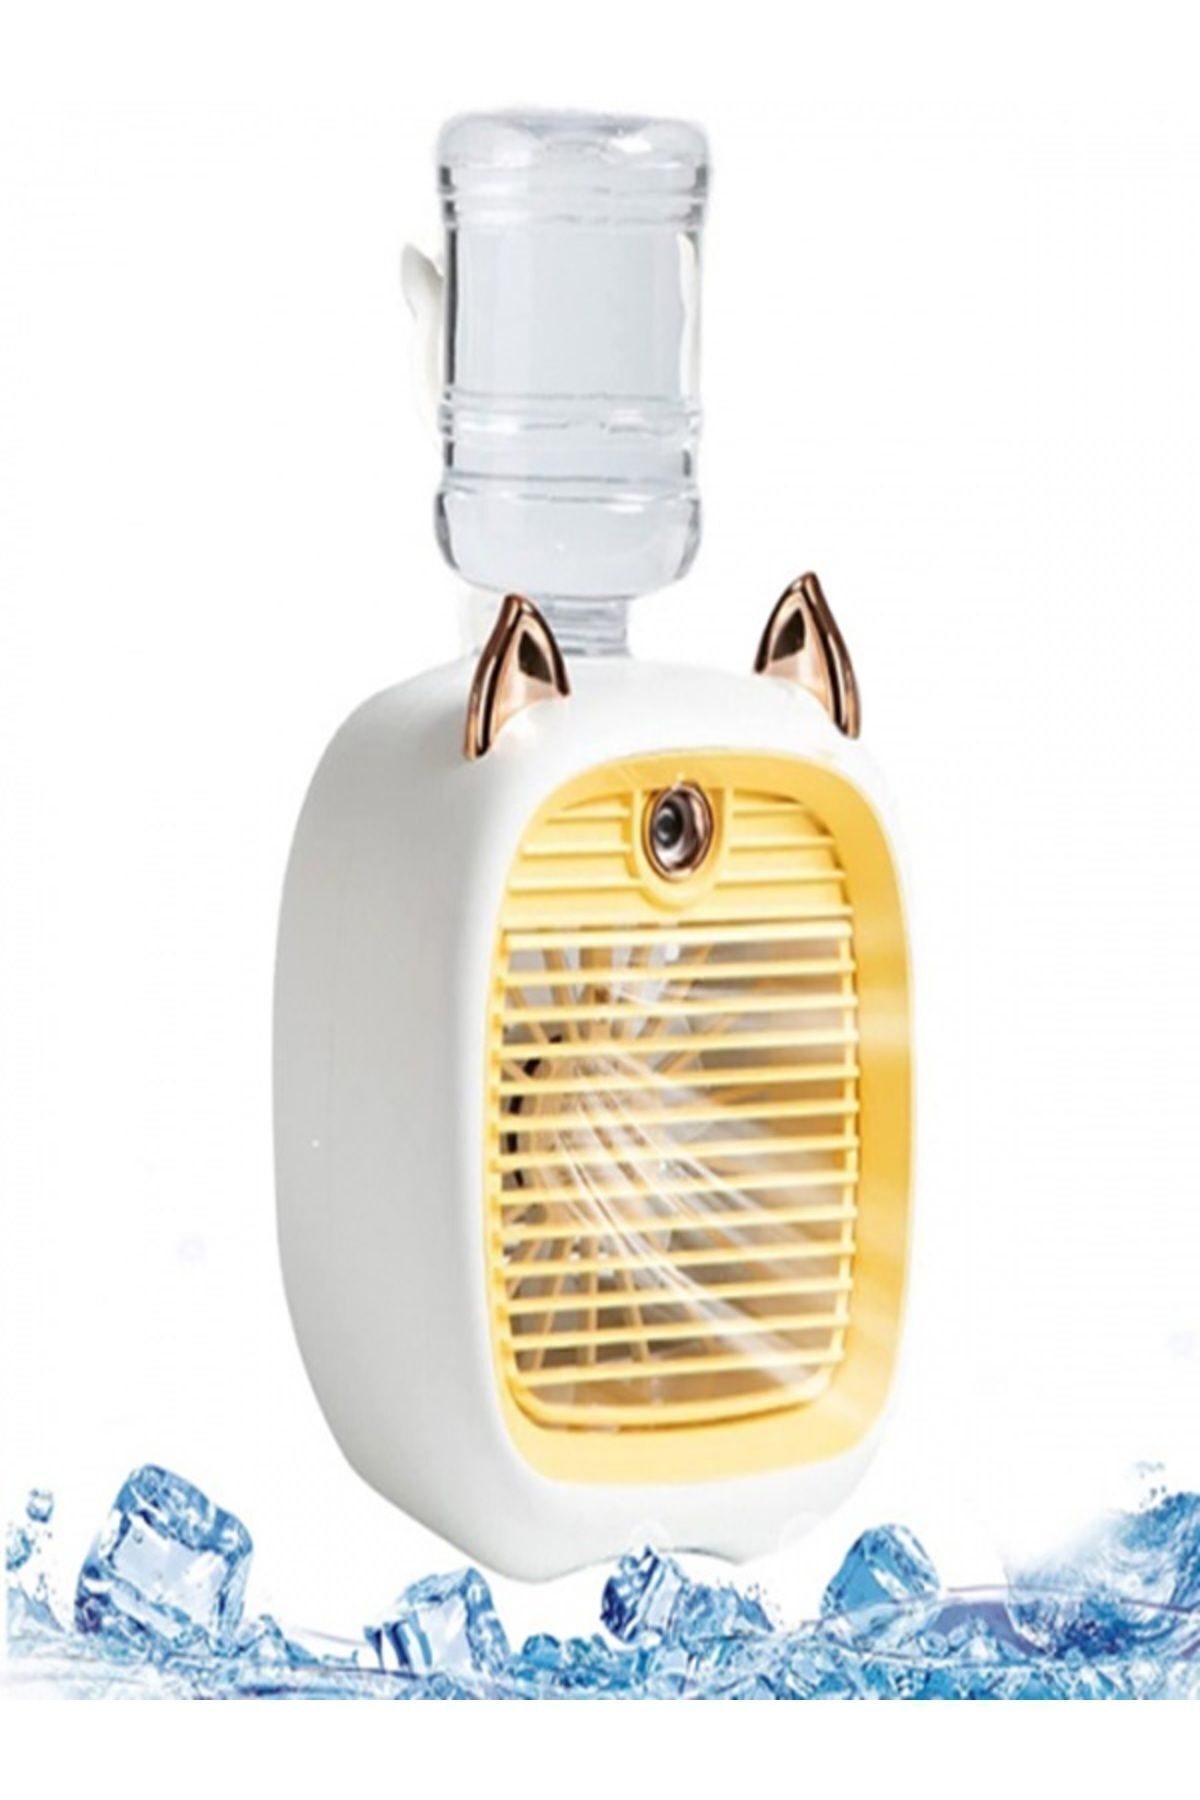 EZERE Hava Nemlendiricili Masaüstü Fan Taşınabilir Mini Klima Soğutucu Sarı Renk